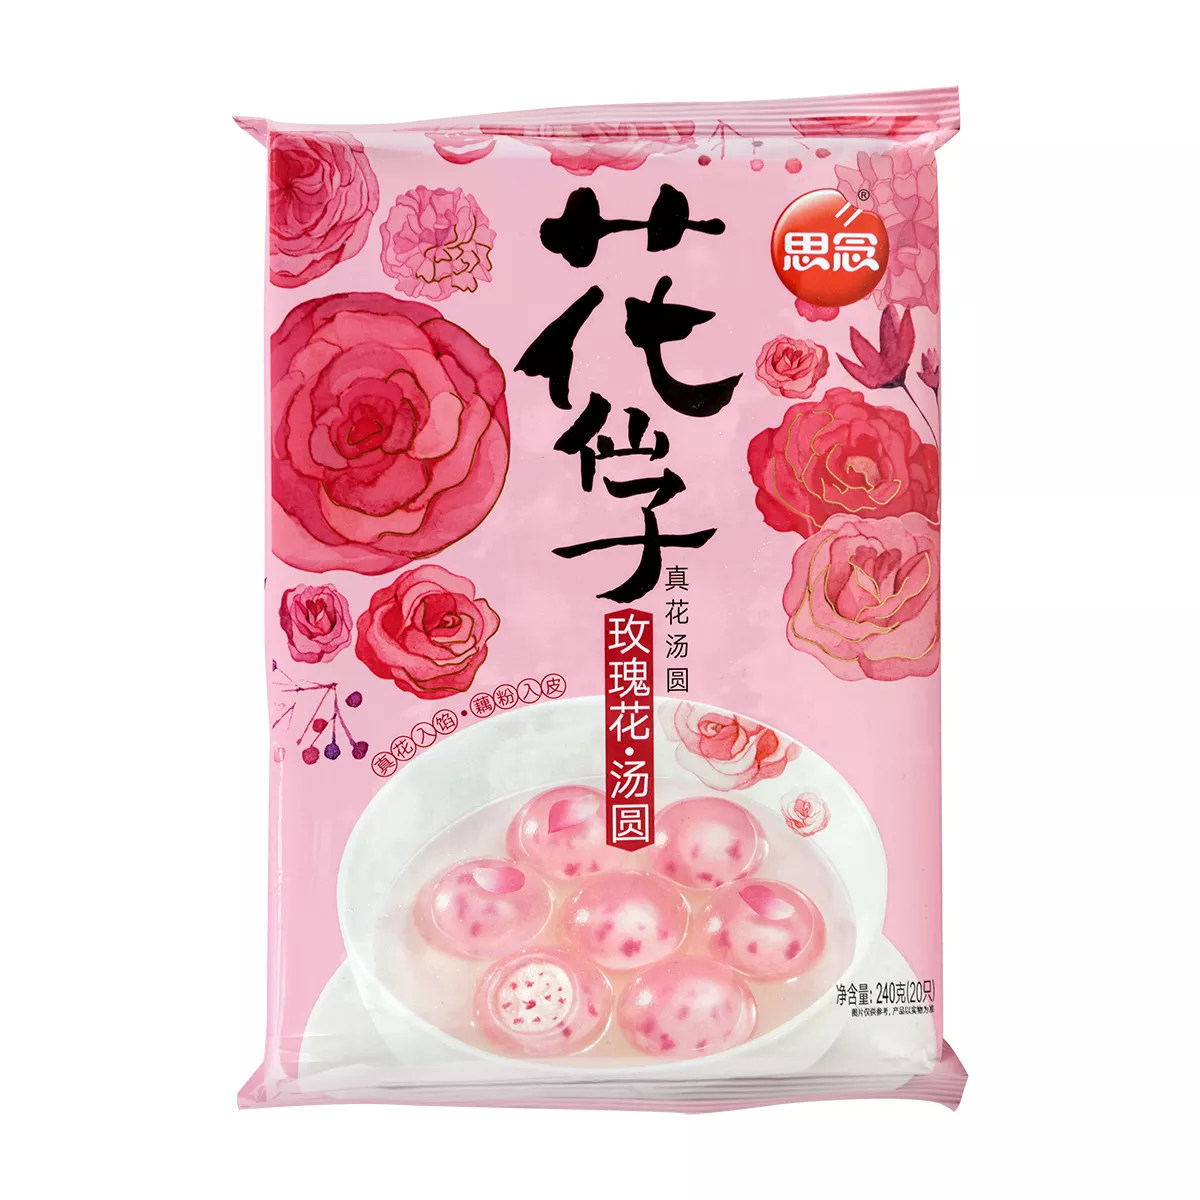 Sweet dumplings Rose Flavour SYNEAR 240g, [],asianfood.ro